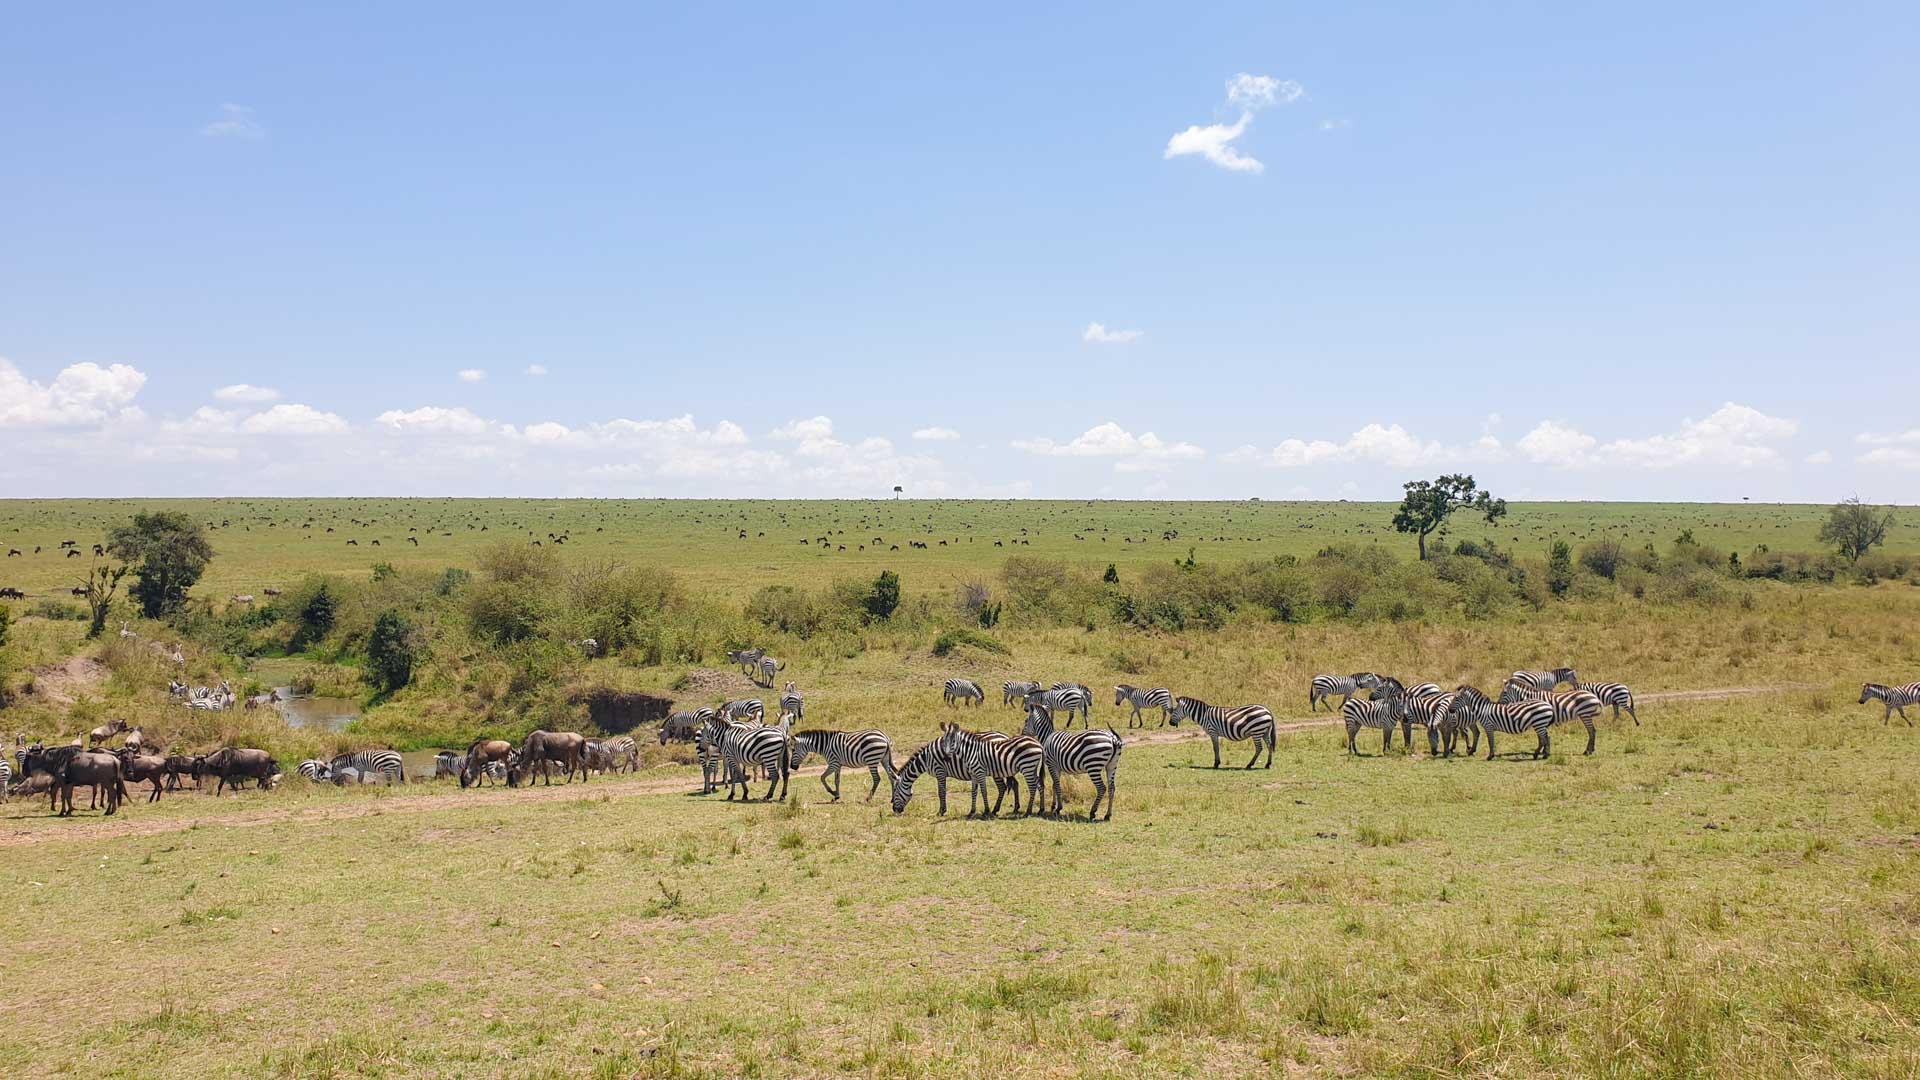 Cebras y ñus en Masai Mara, Kenia